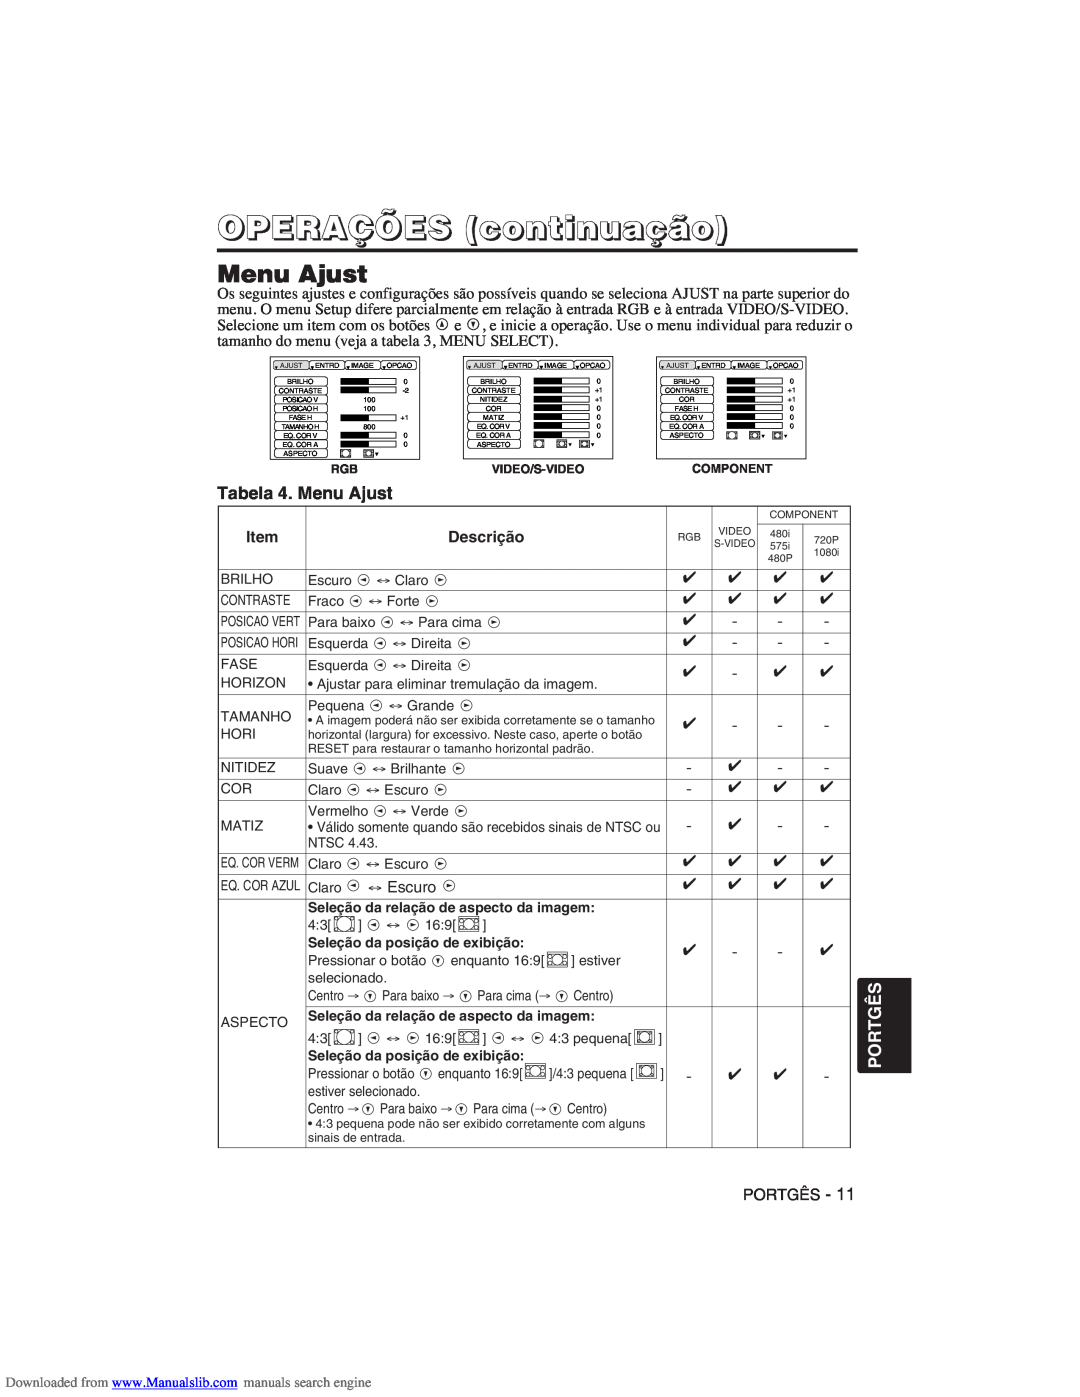 Hitachi CP-X275W user manual Tabela 4. Menu Ajust, OPERAÇÕES continuação, Portgês 